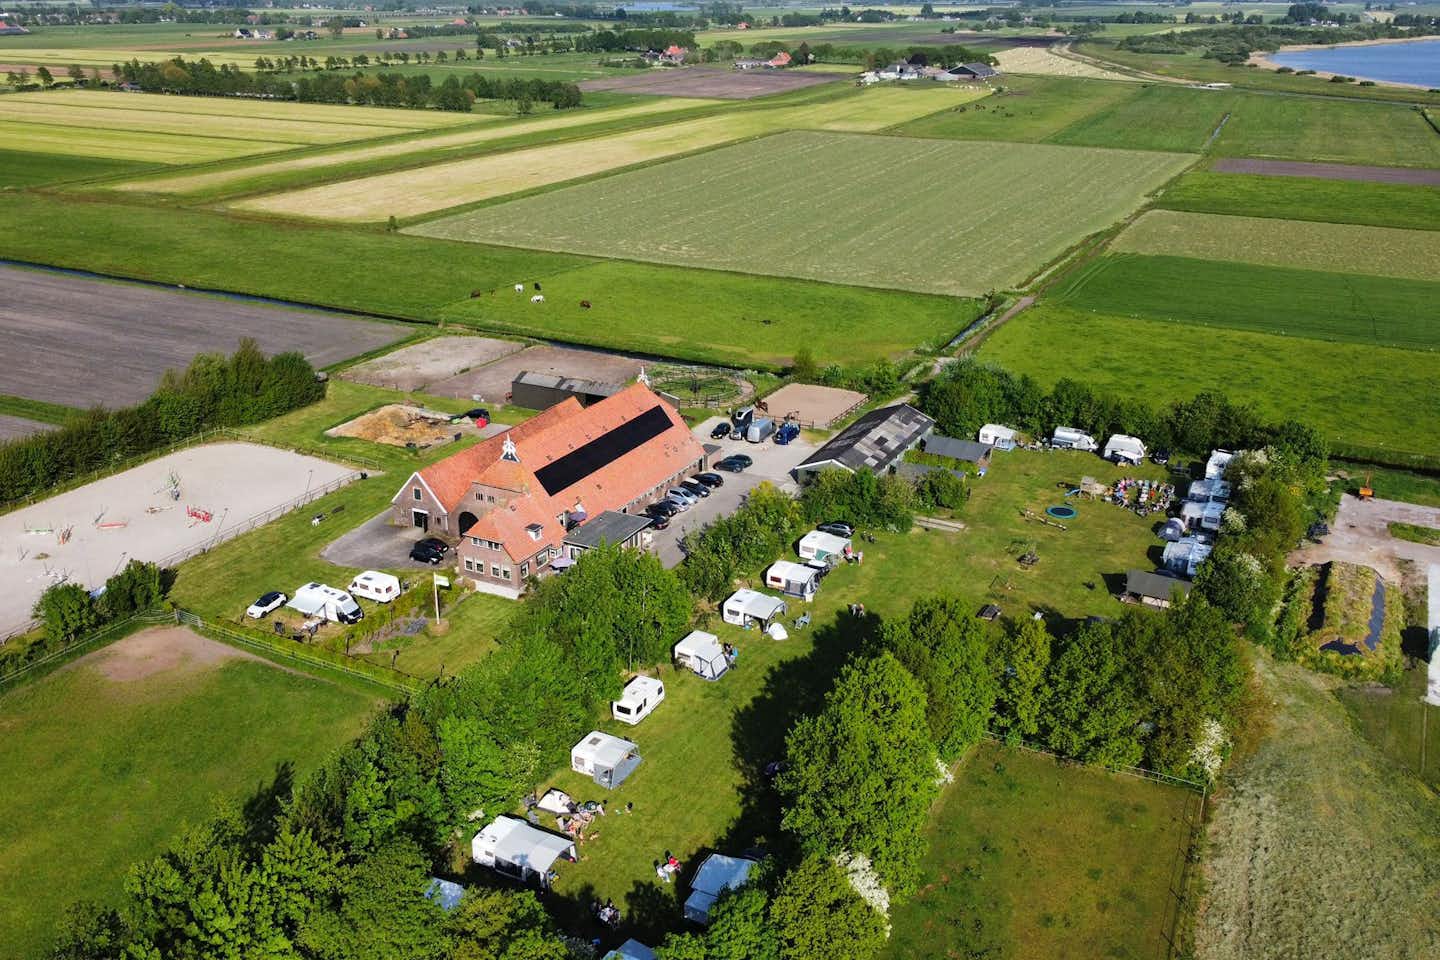 Camping Eefting - Luftaufnahme des Campingplatzes im Grünen